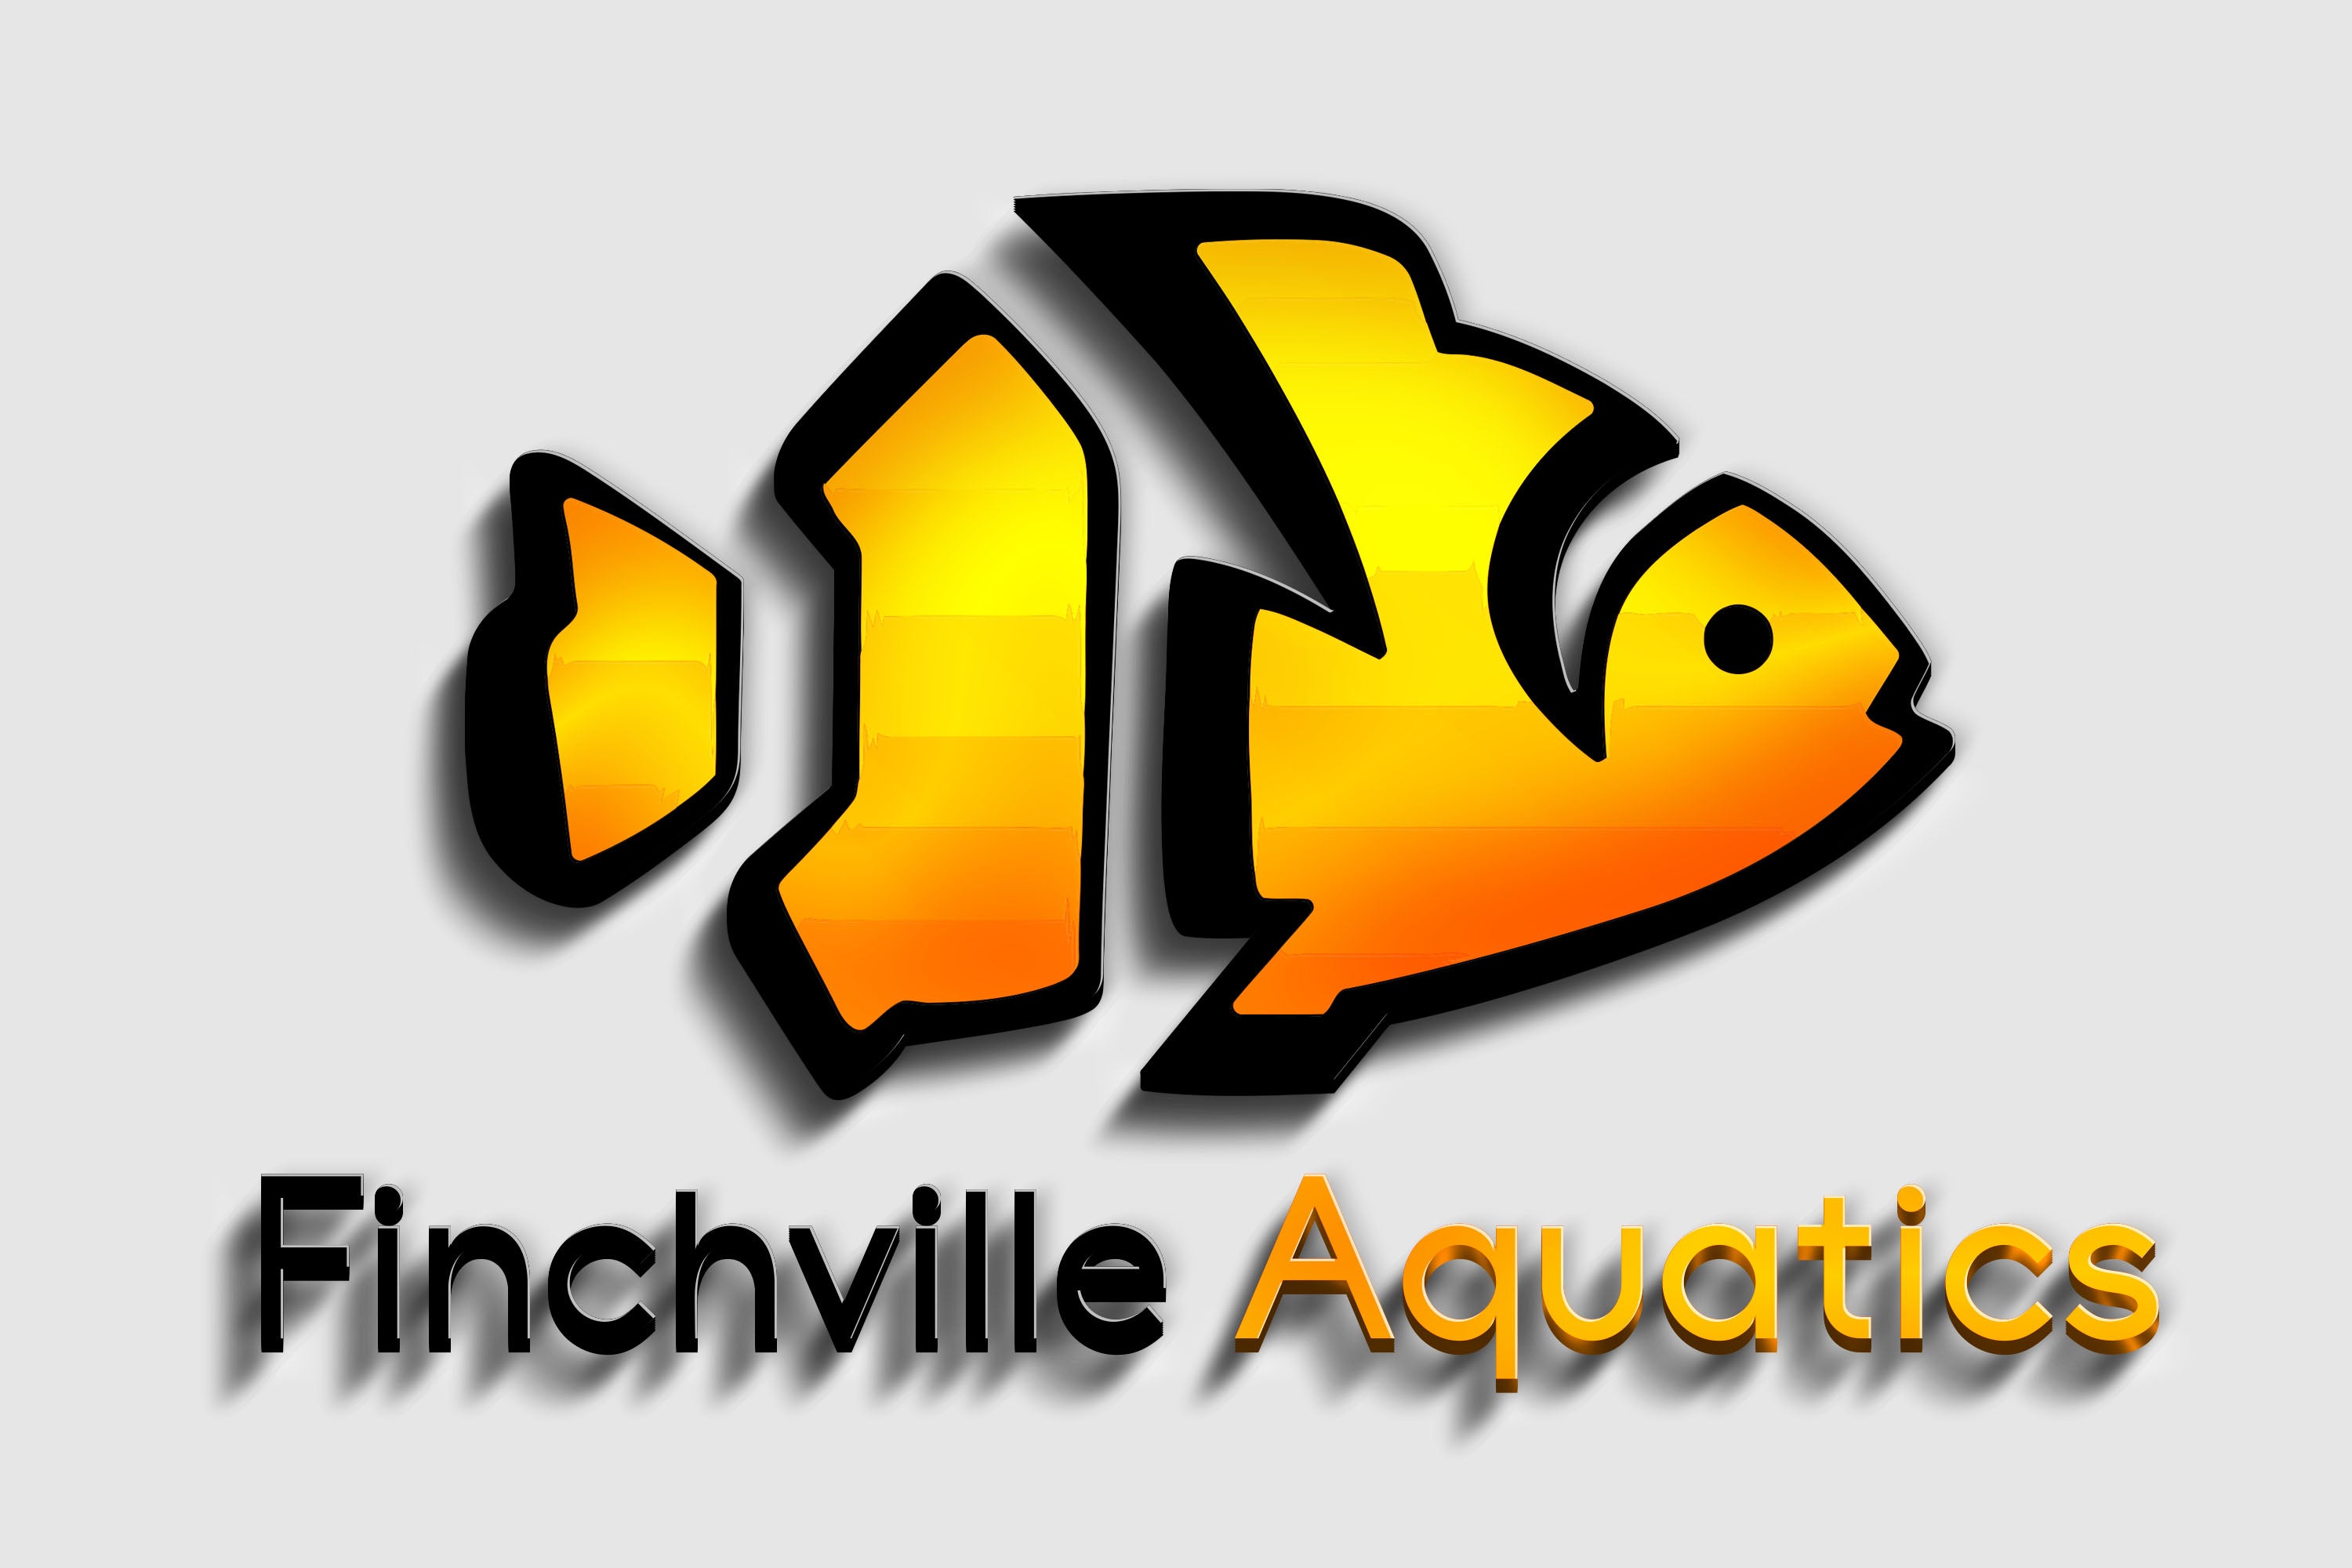 Fish Fuel Co. Frozen Axolotl Food - 10 Pack – Coburg Aquarium